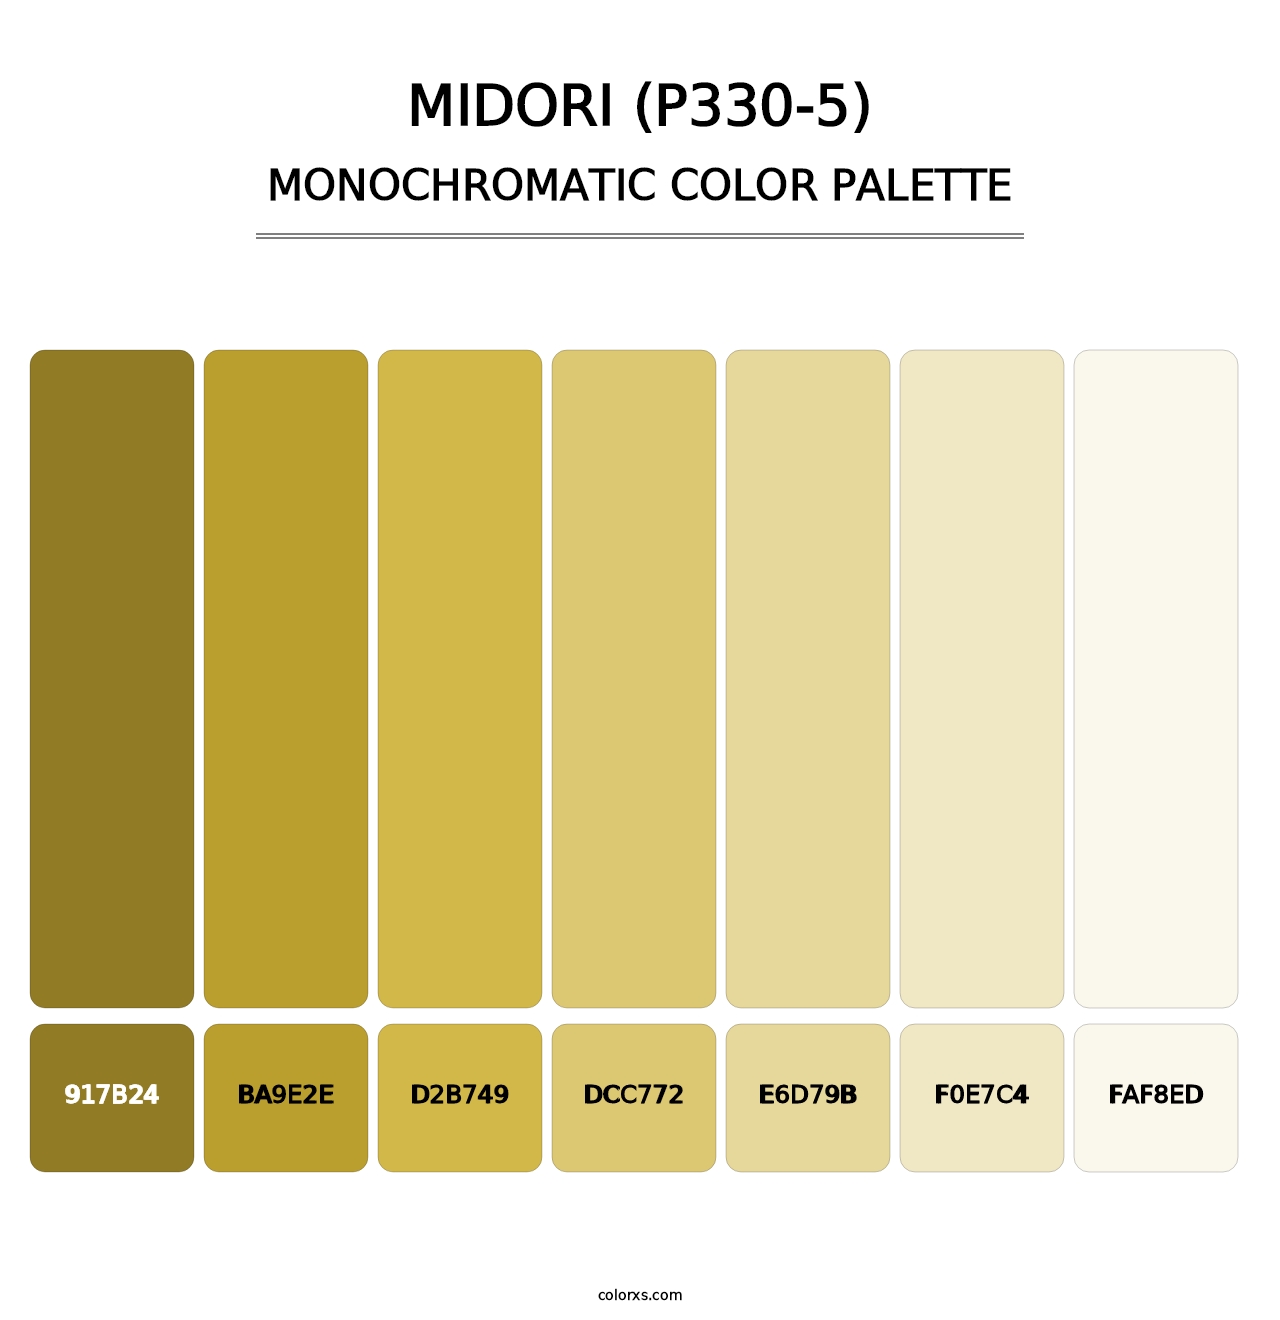 Midori (P330-5) - Monochromatic Color Palette